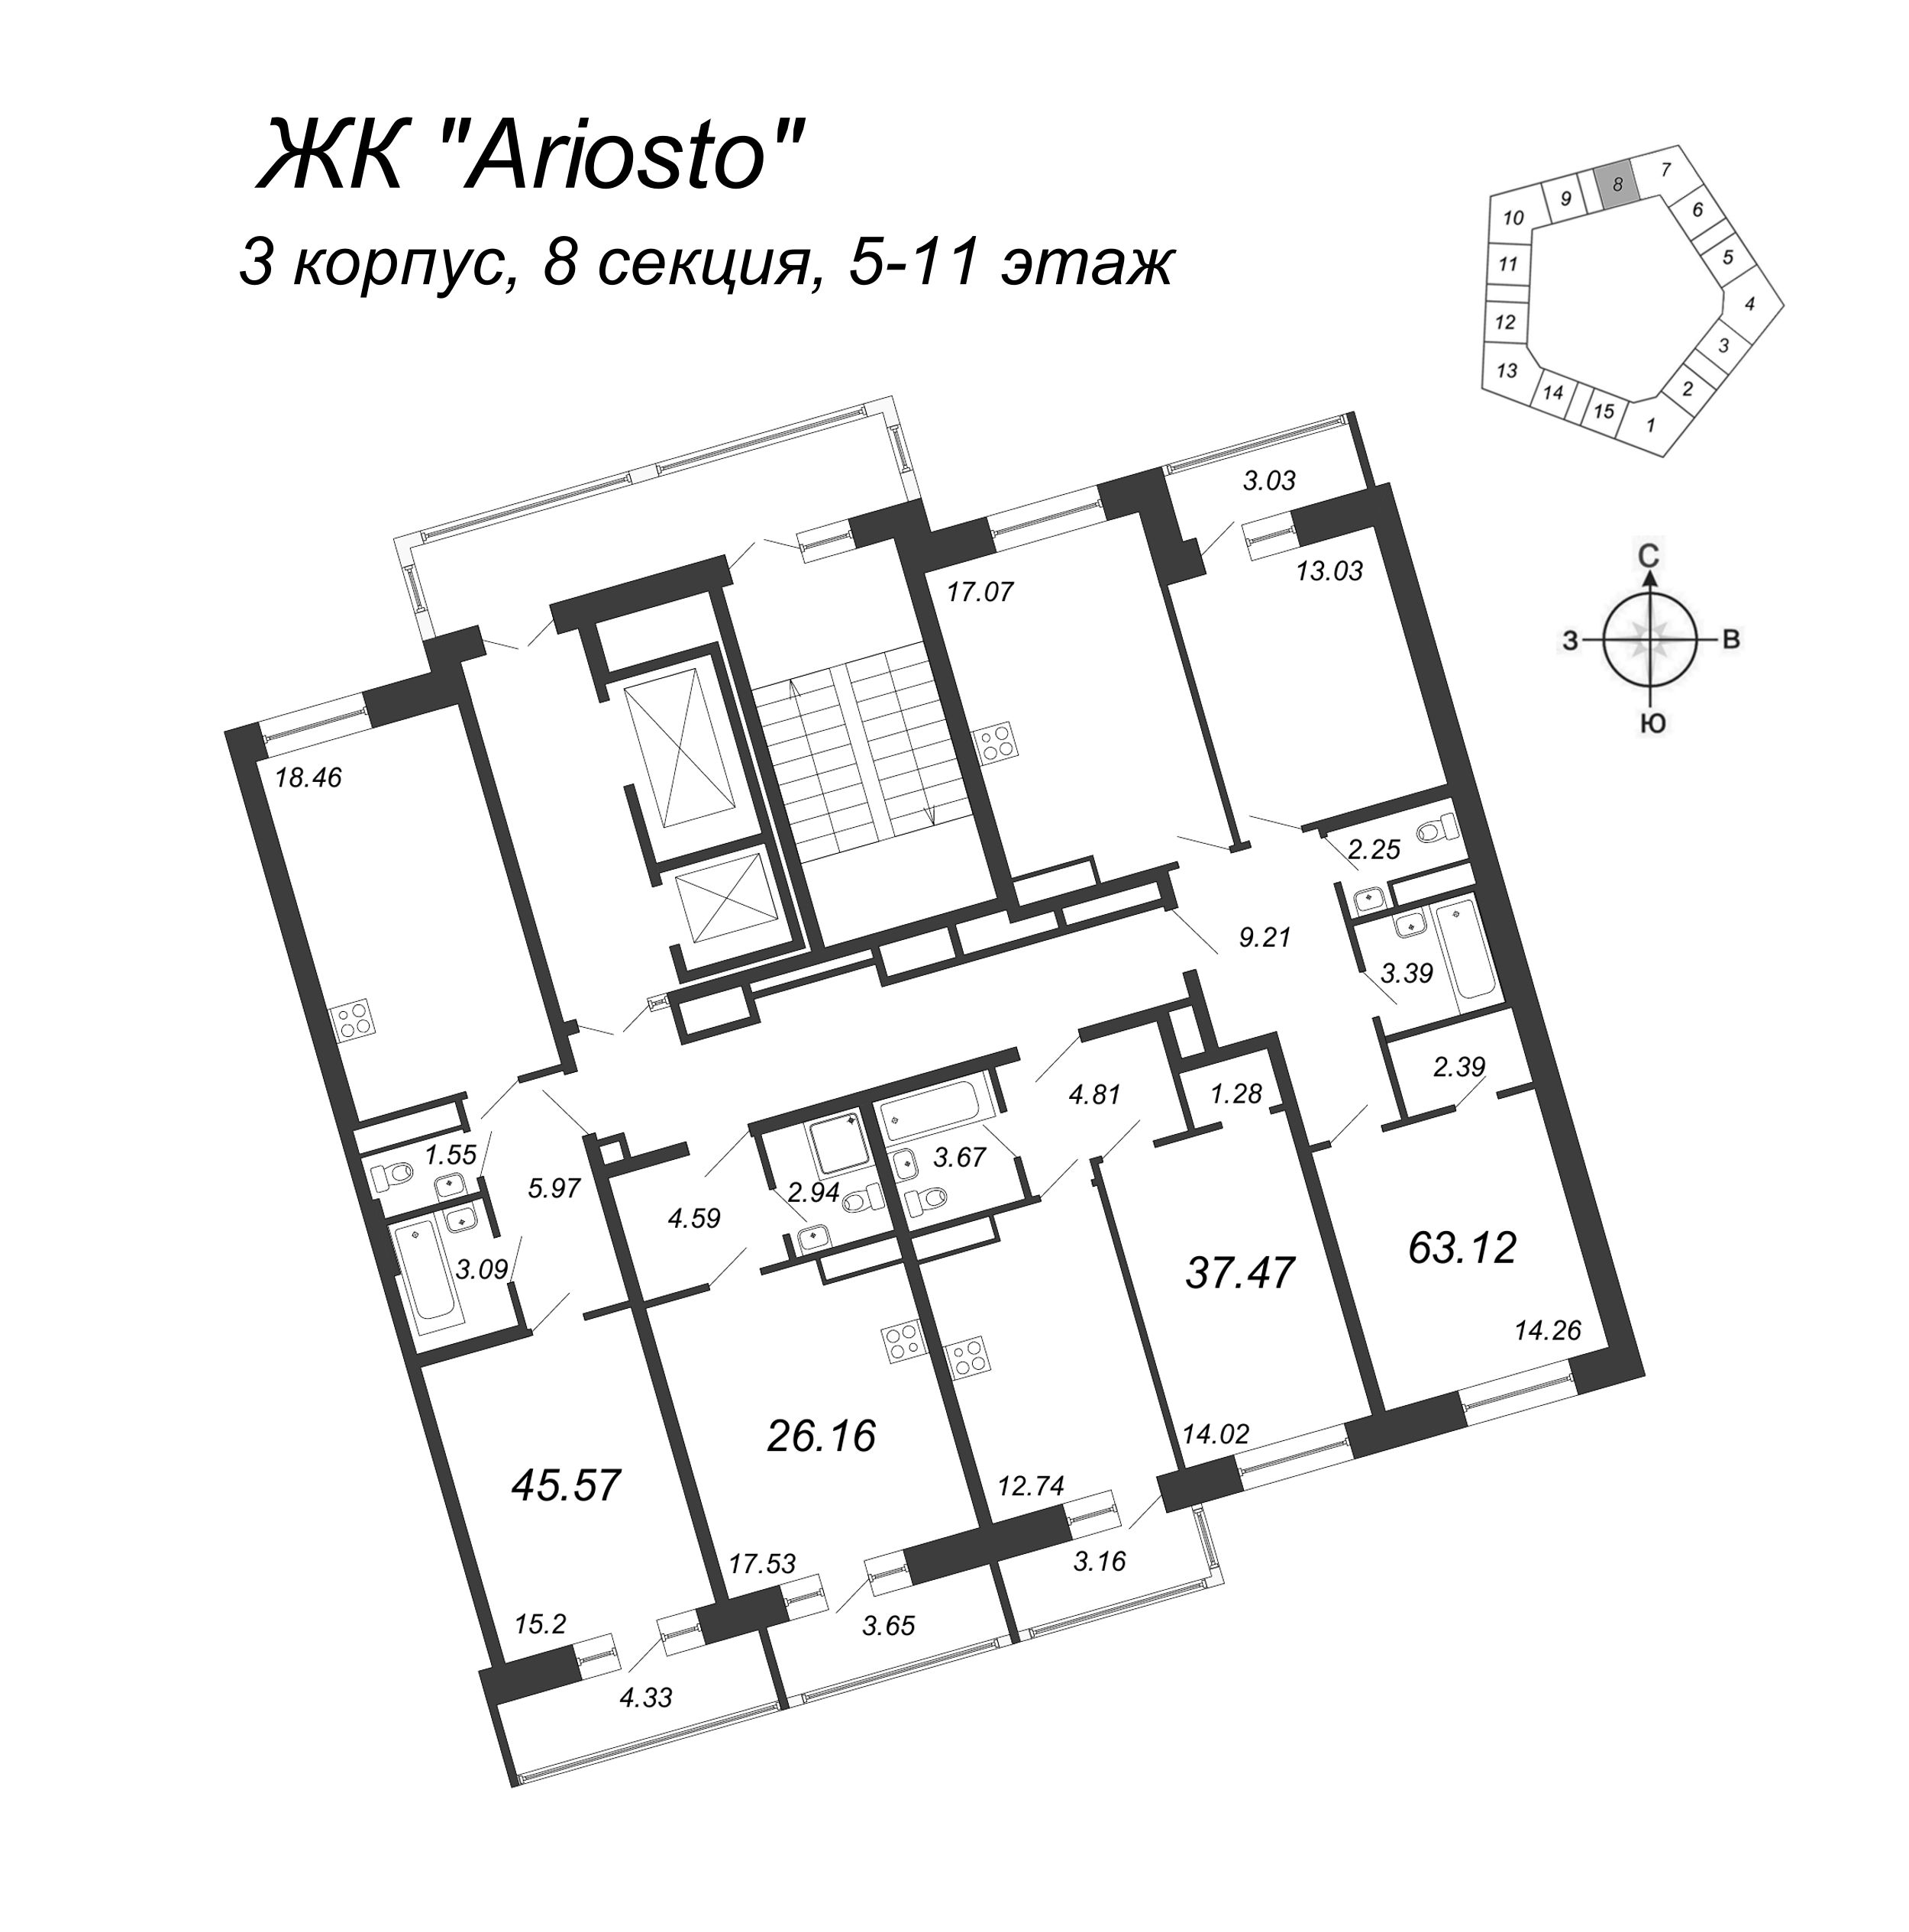 3-комнатная (Евро) квартира, 63.12 м² в ЖК "Ariosto" - планировка этажа